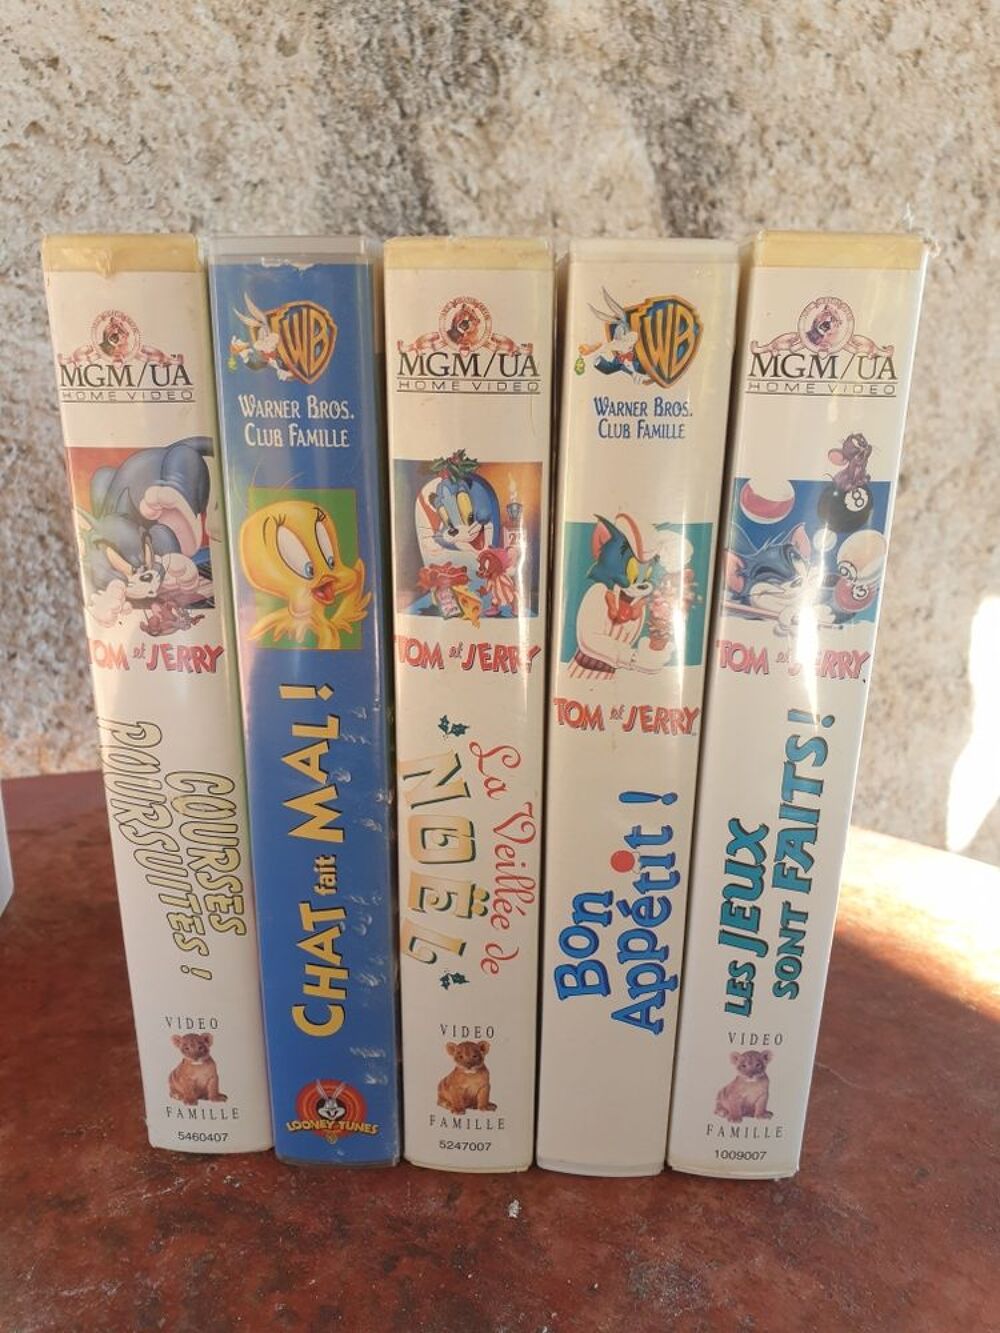 Cassettes VHS Dessins Anim&eacute;s Tom et Jerry Titi et Grosminet deux Films Audio et hifi